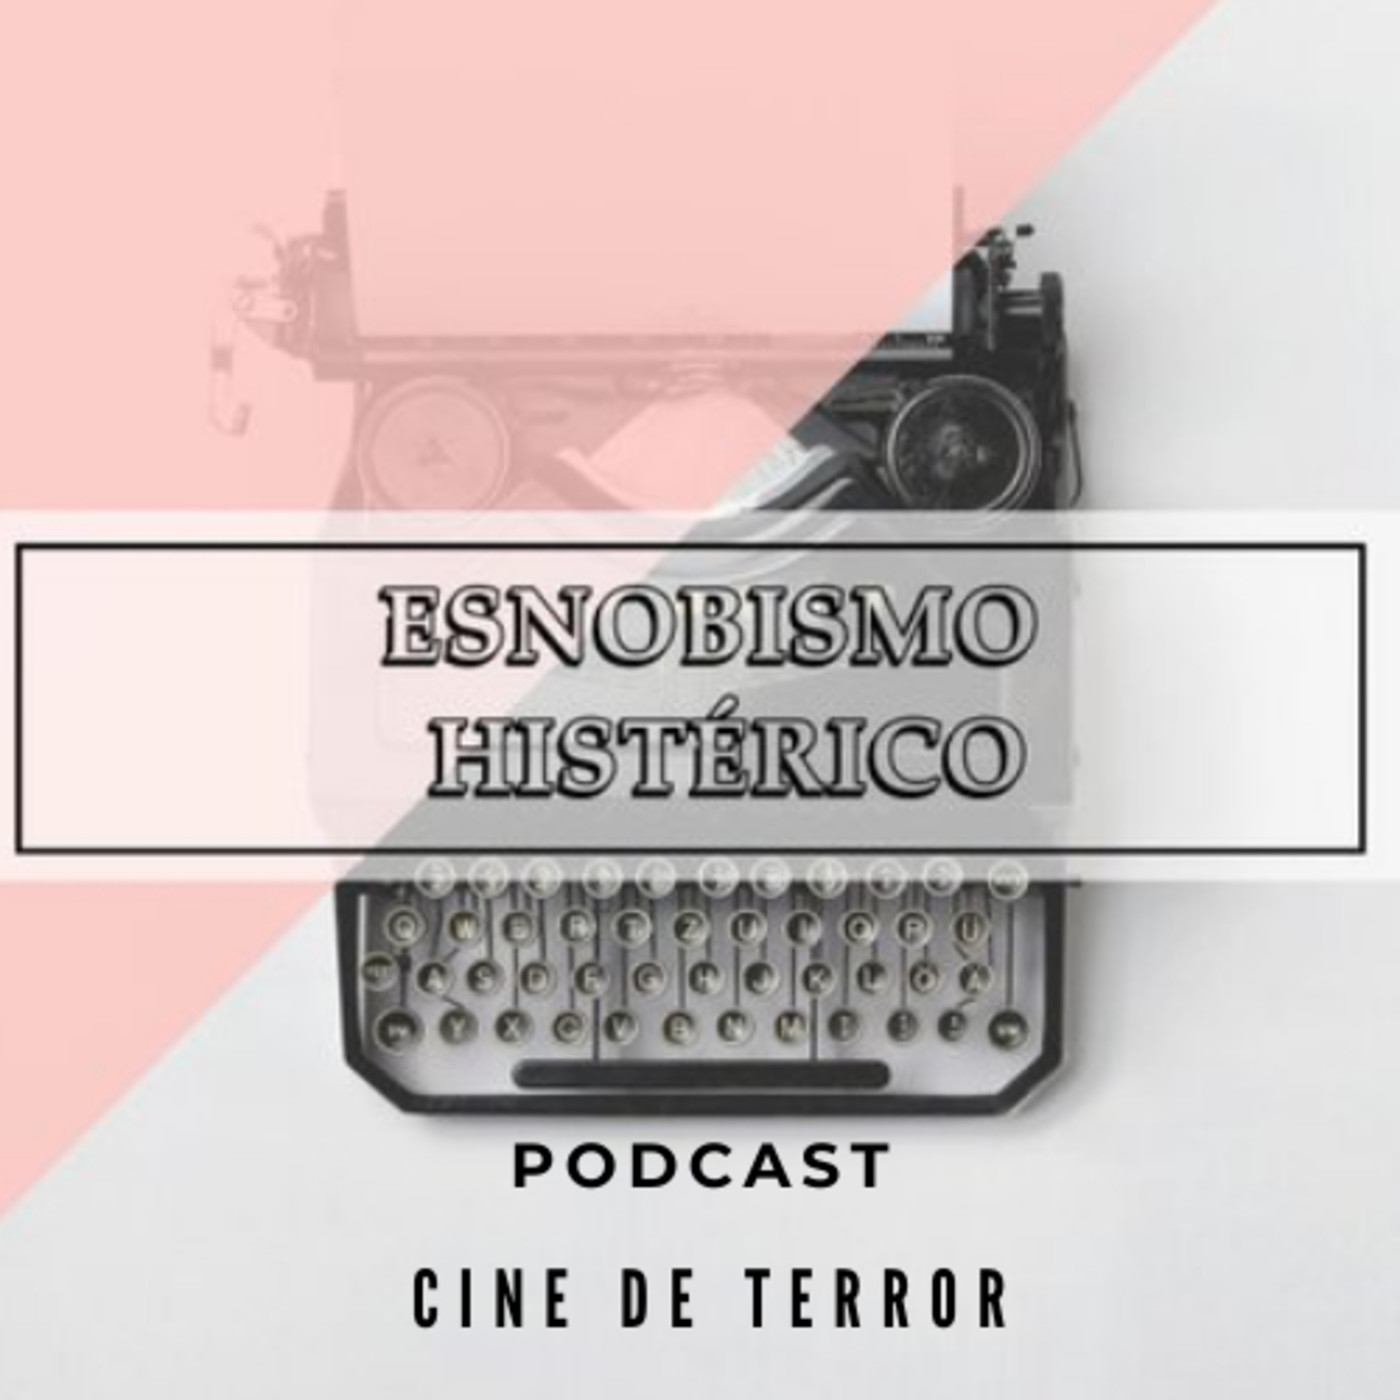 Cine de terror: El placer de asustarse